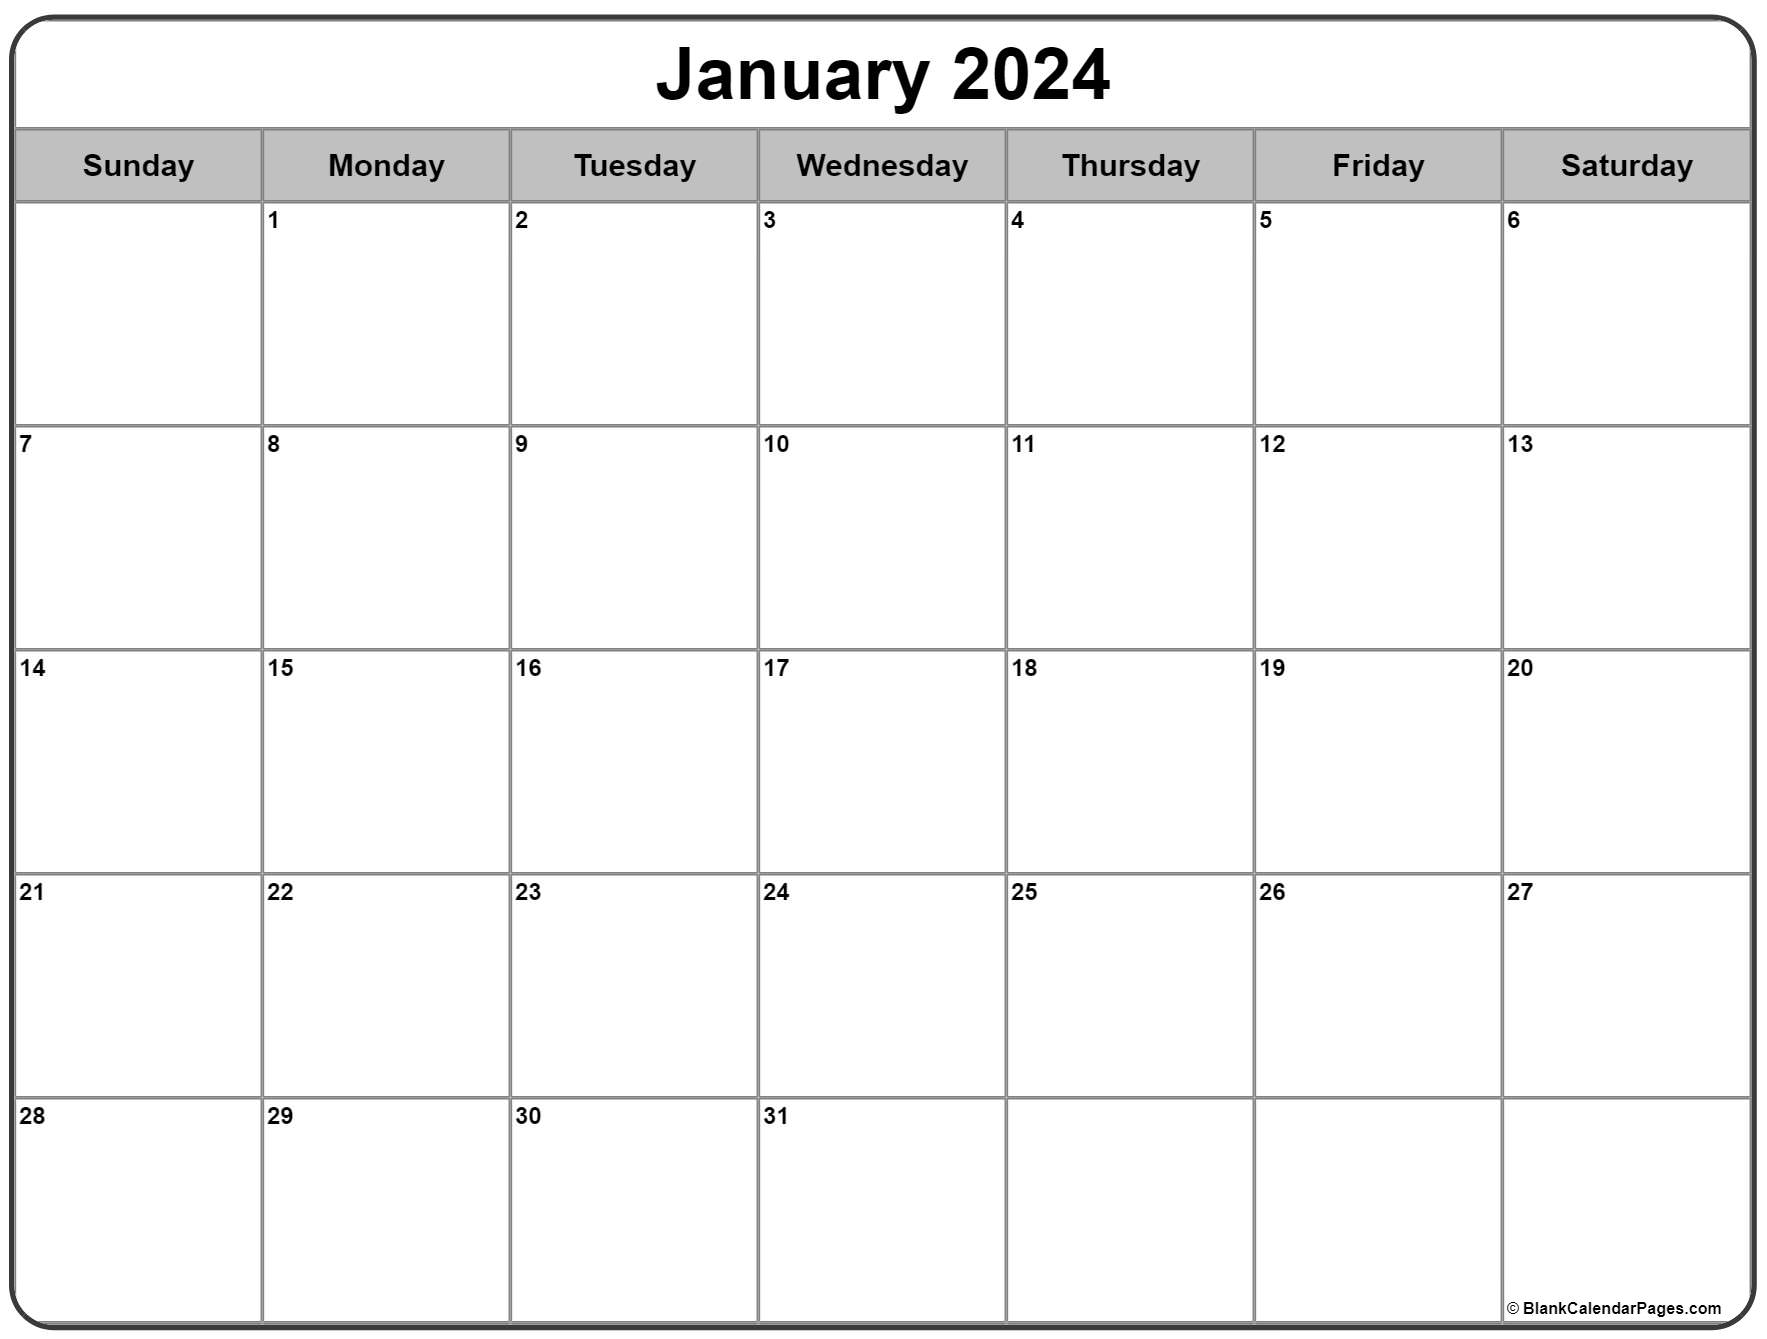 Free Printable January 2023 Printable World Holiday